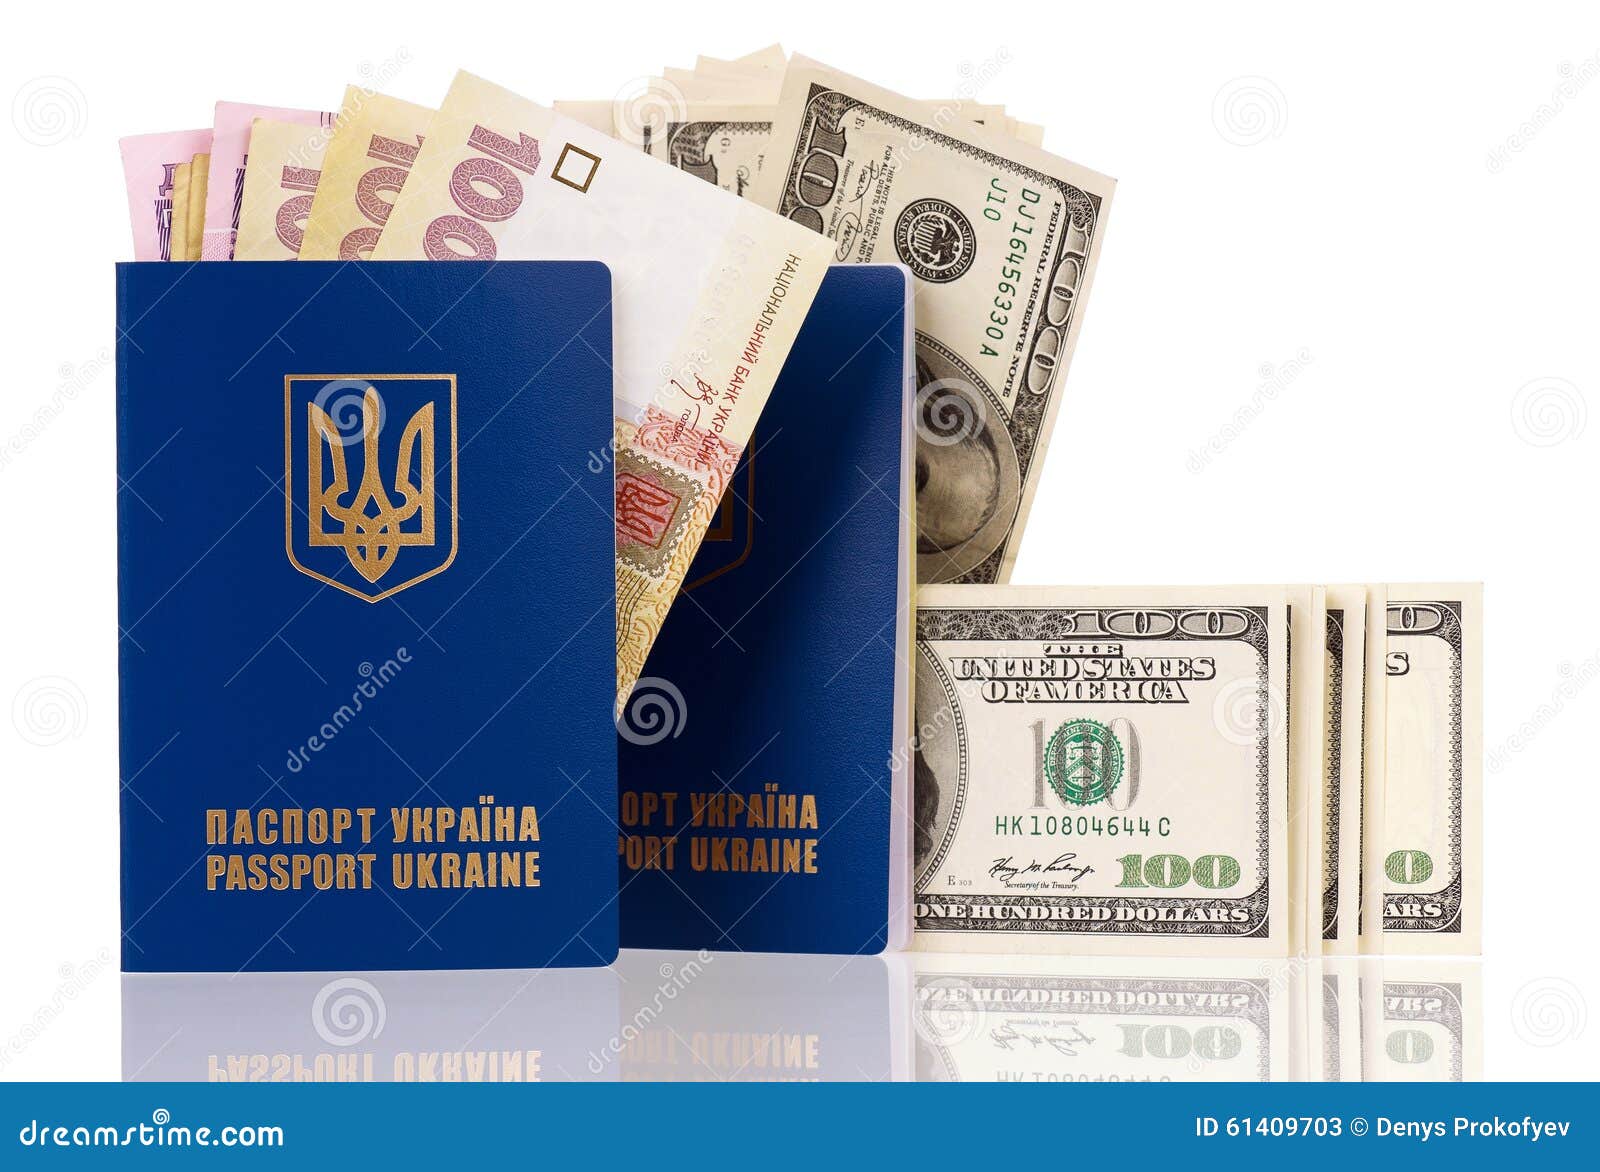 Микрозайм онлайн армянским паспортом онлайн